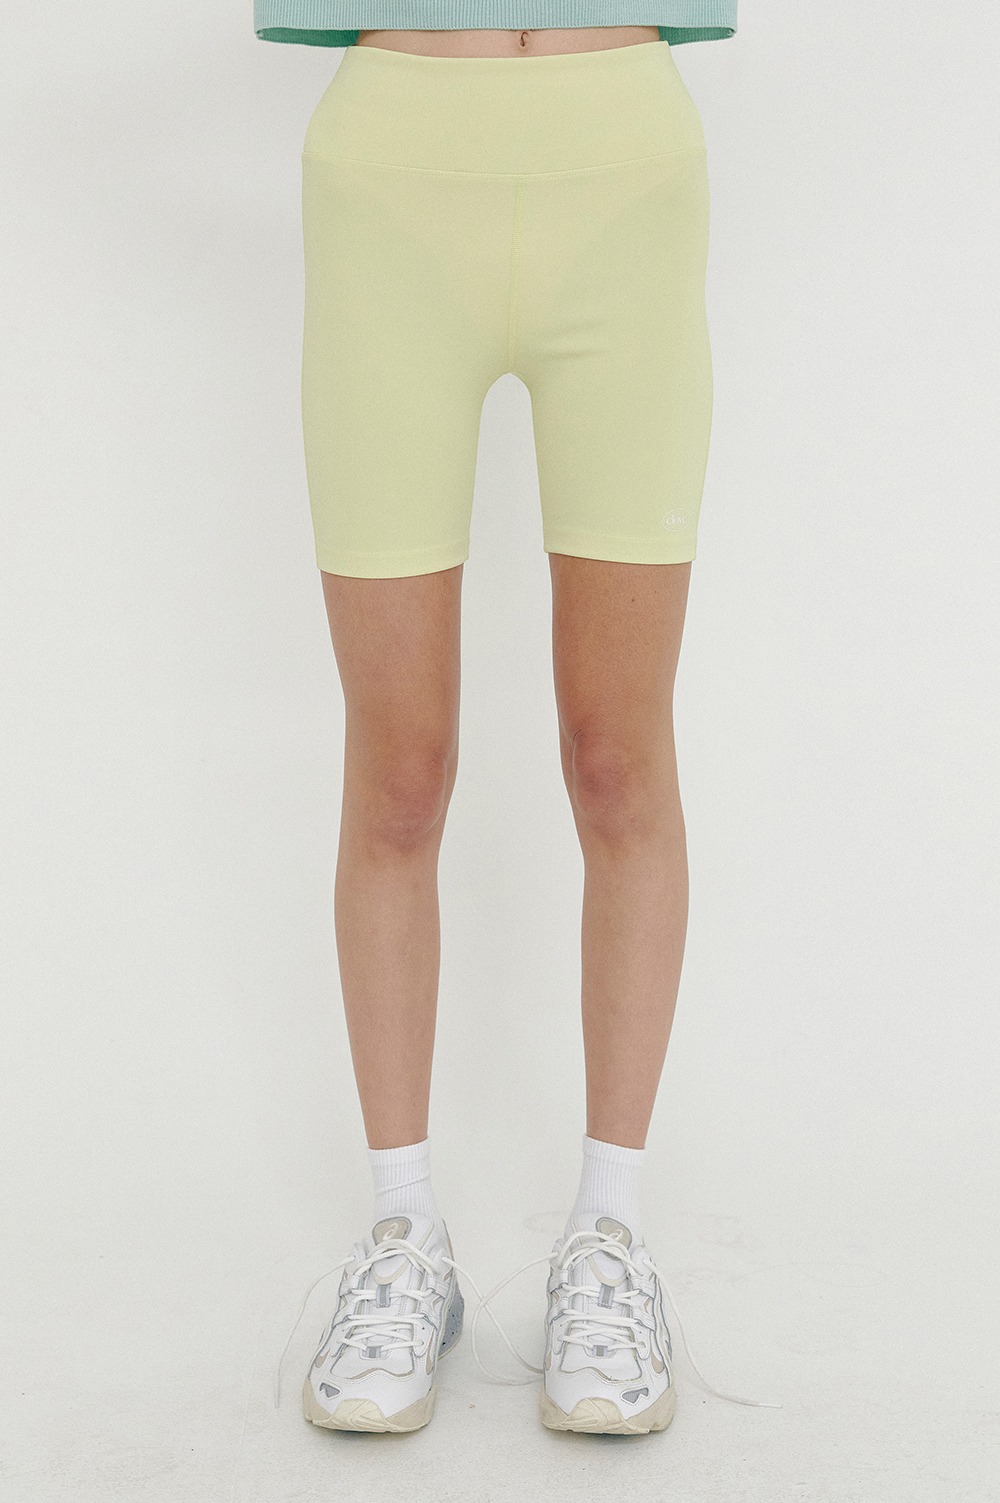 clove - [SS21 clove] Logo Biker Shorts Lime